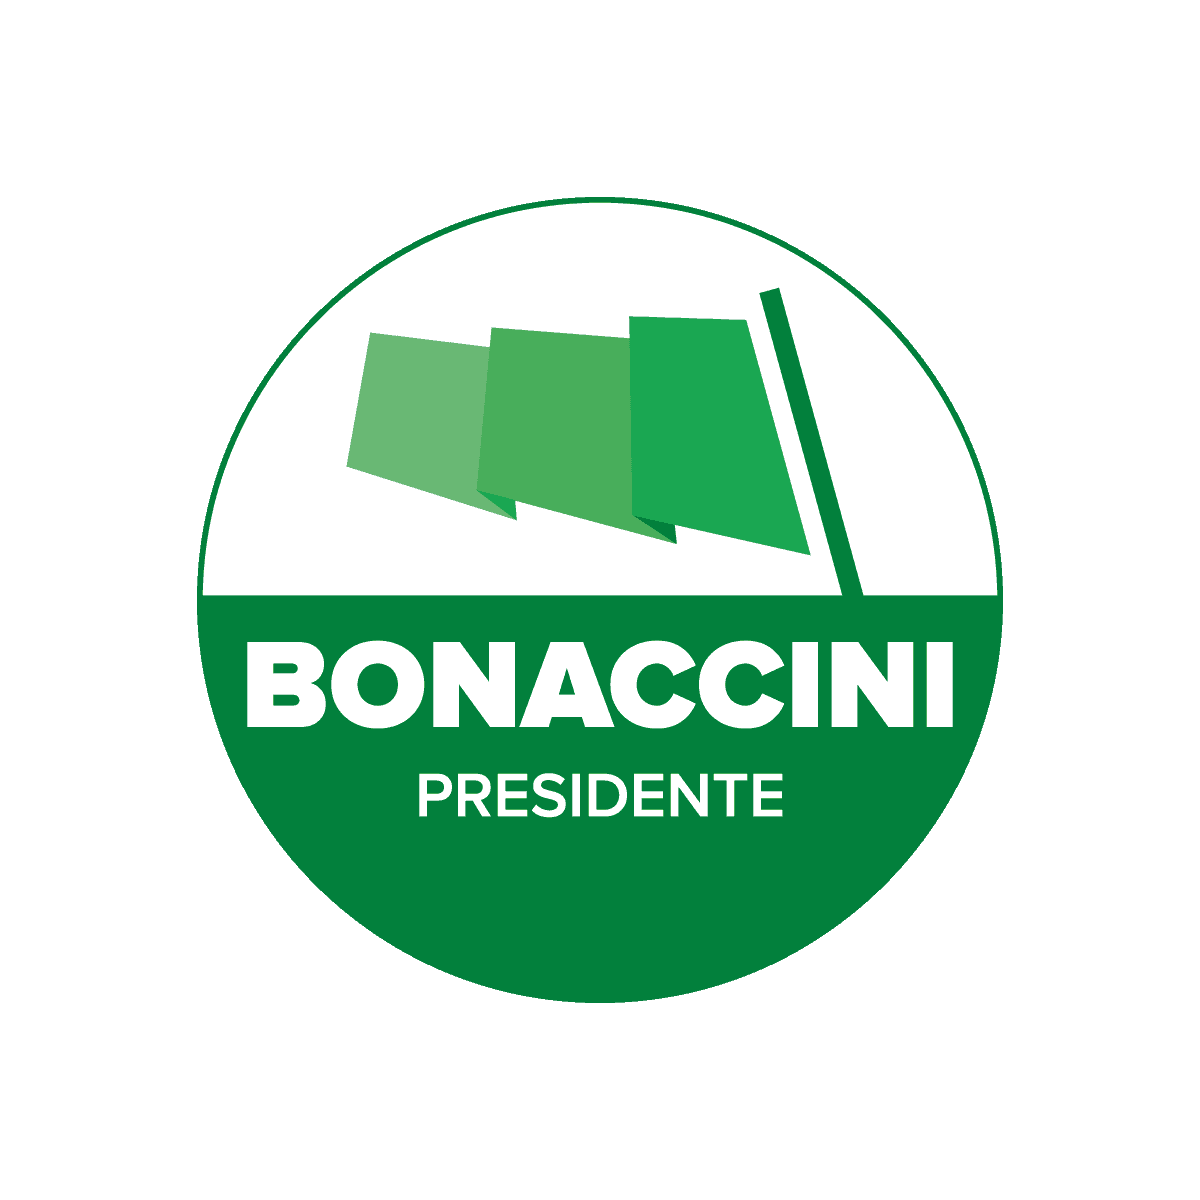 Stefano Bonaccini | Campagna elettorale | Agenzia ORA